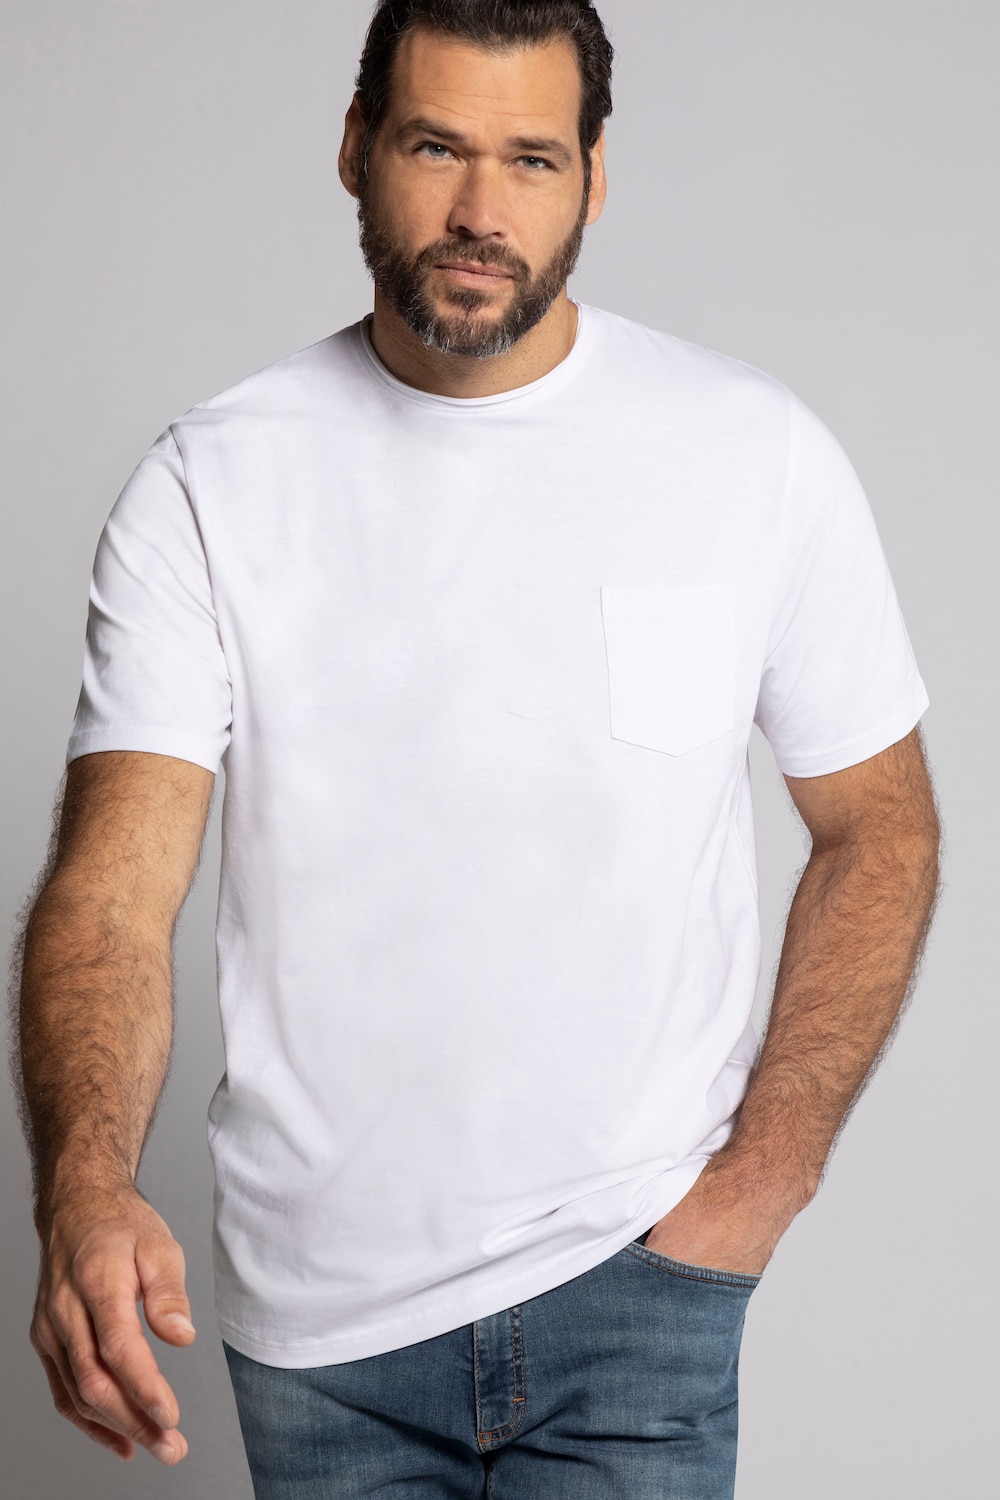 Grote Maten T-shirt, Heren, wit, Maat: 3XL, Katoen, JP1880